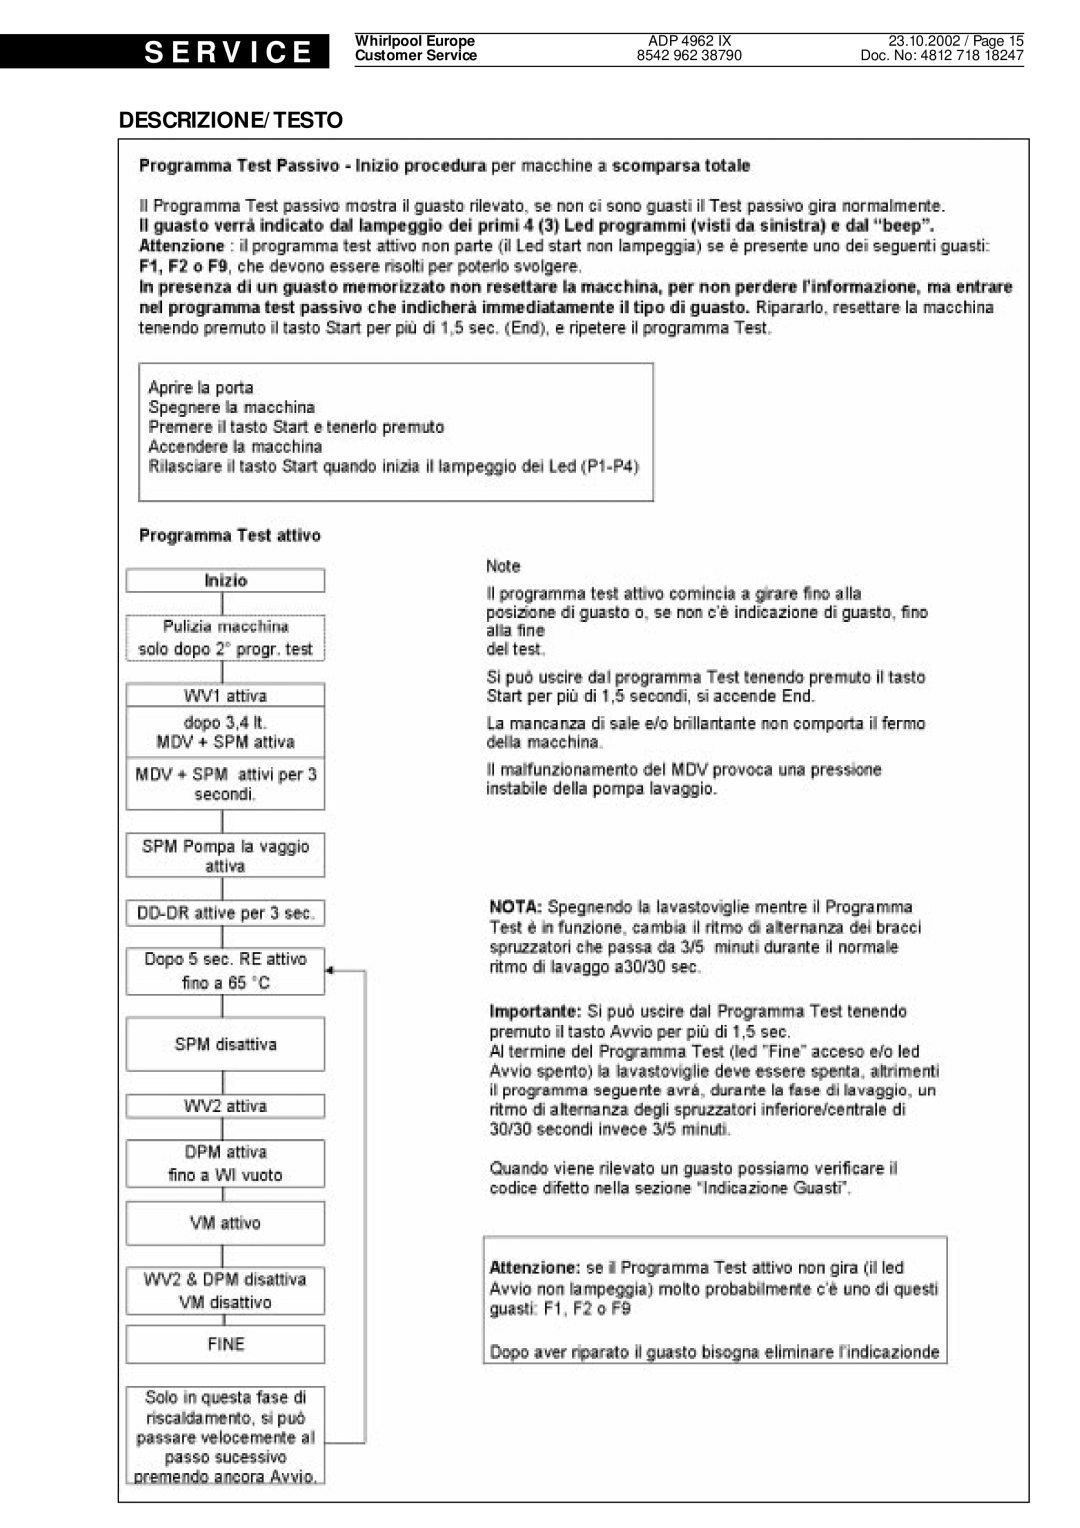 Whirlpool 4962, IX service manual S E R V I C E, Descrizione/Testo, 23.10.2002 / Page, Doc. No 